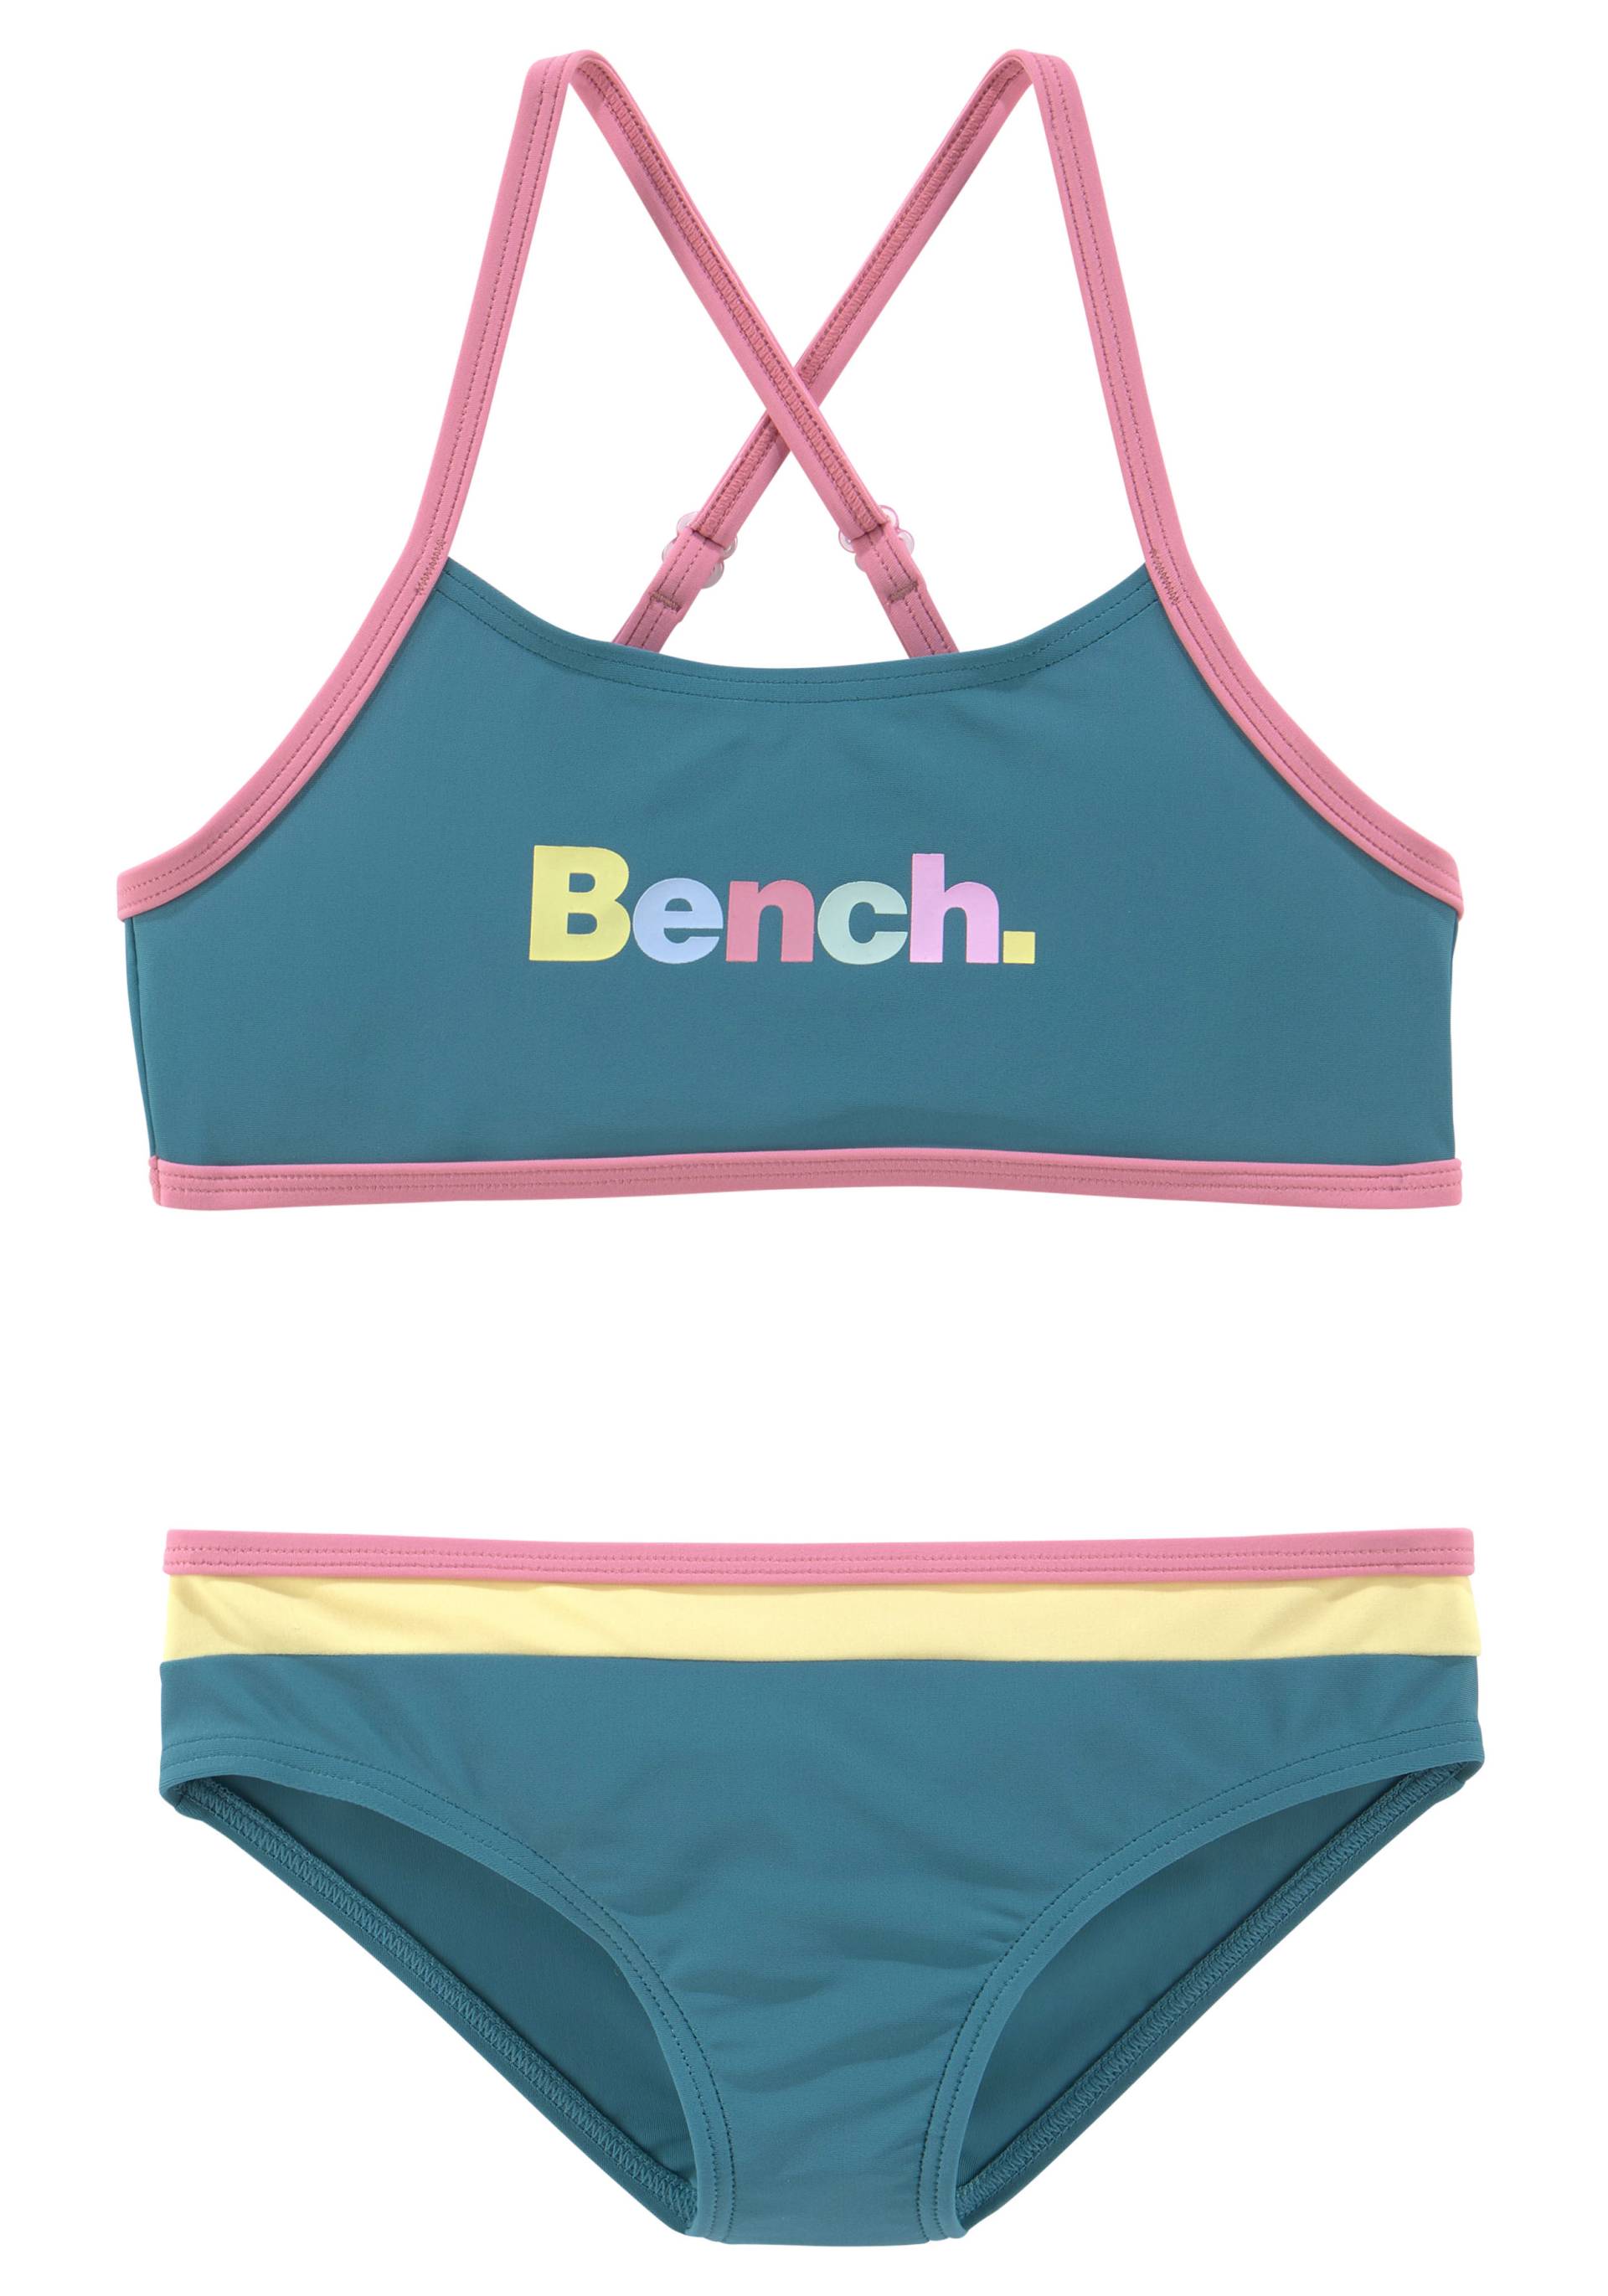 Bench. Bustier-Bikini, mit bunten Details von Bench.